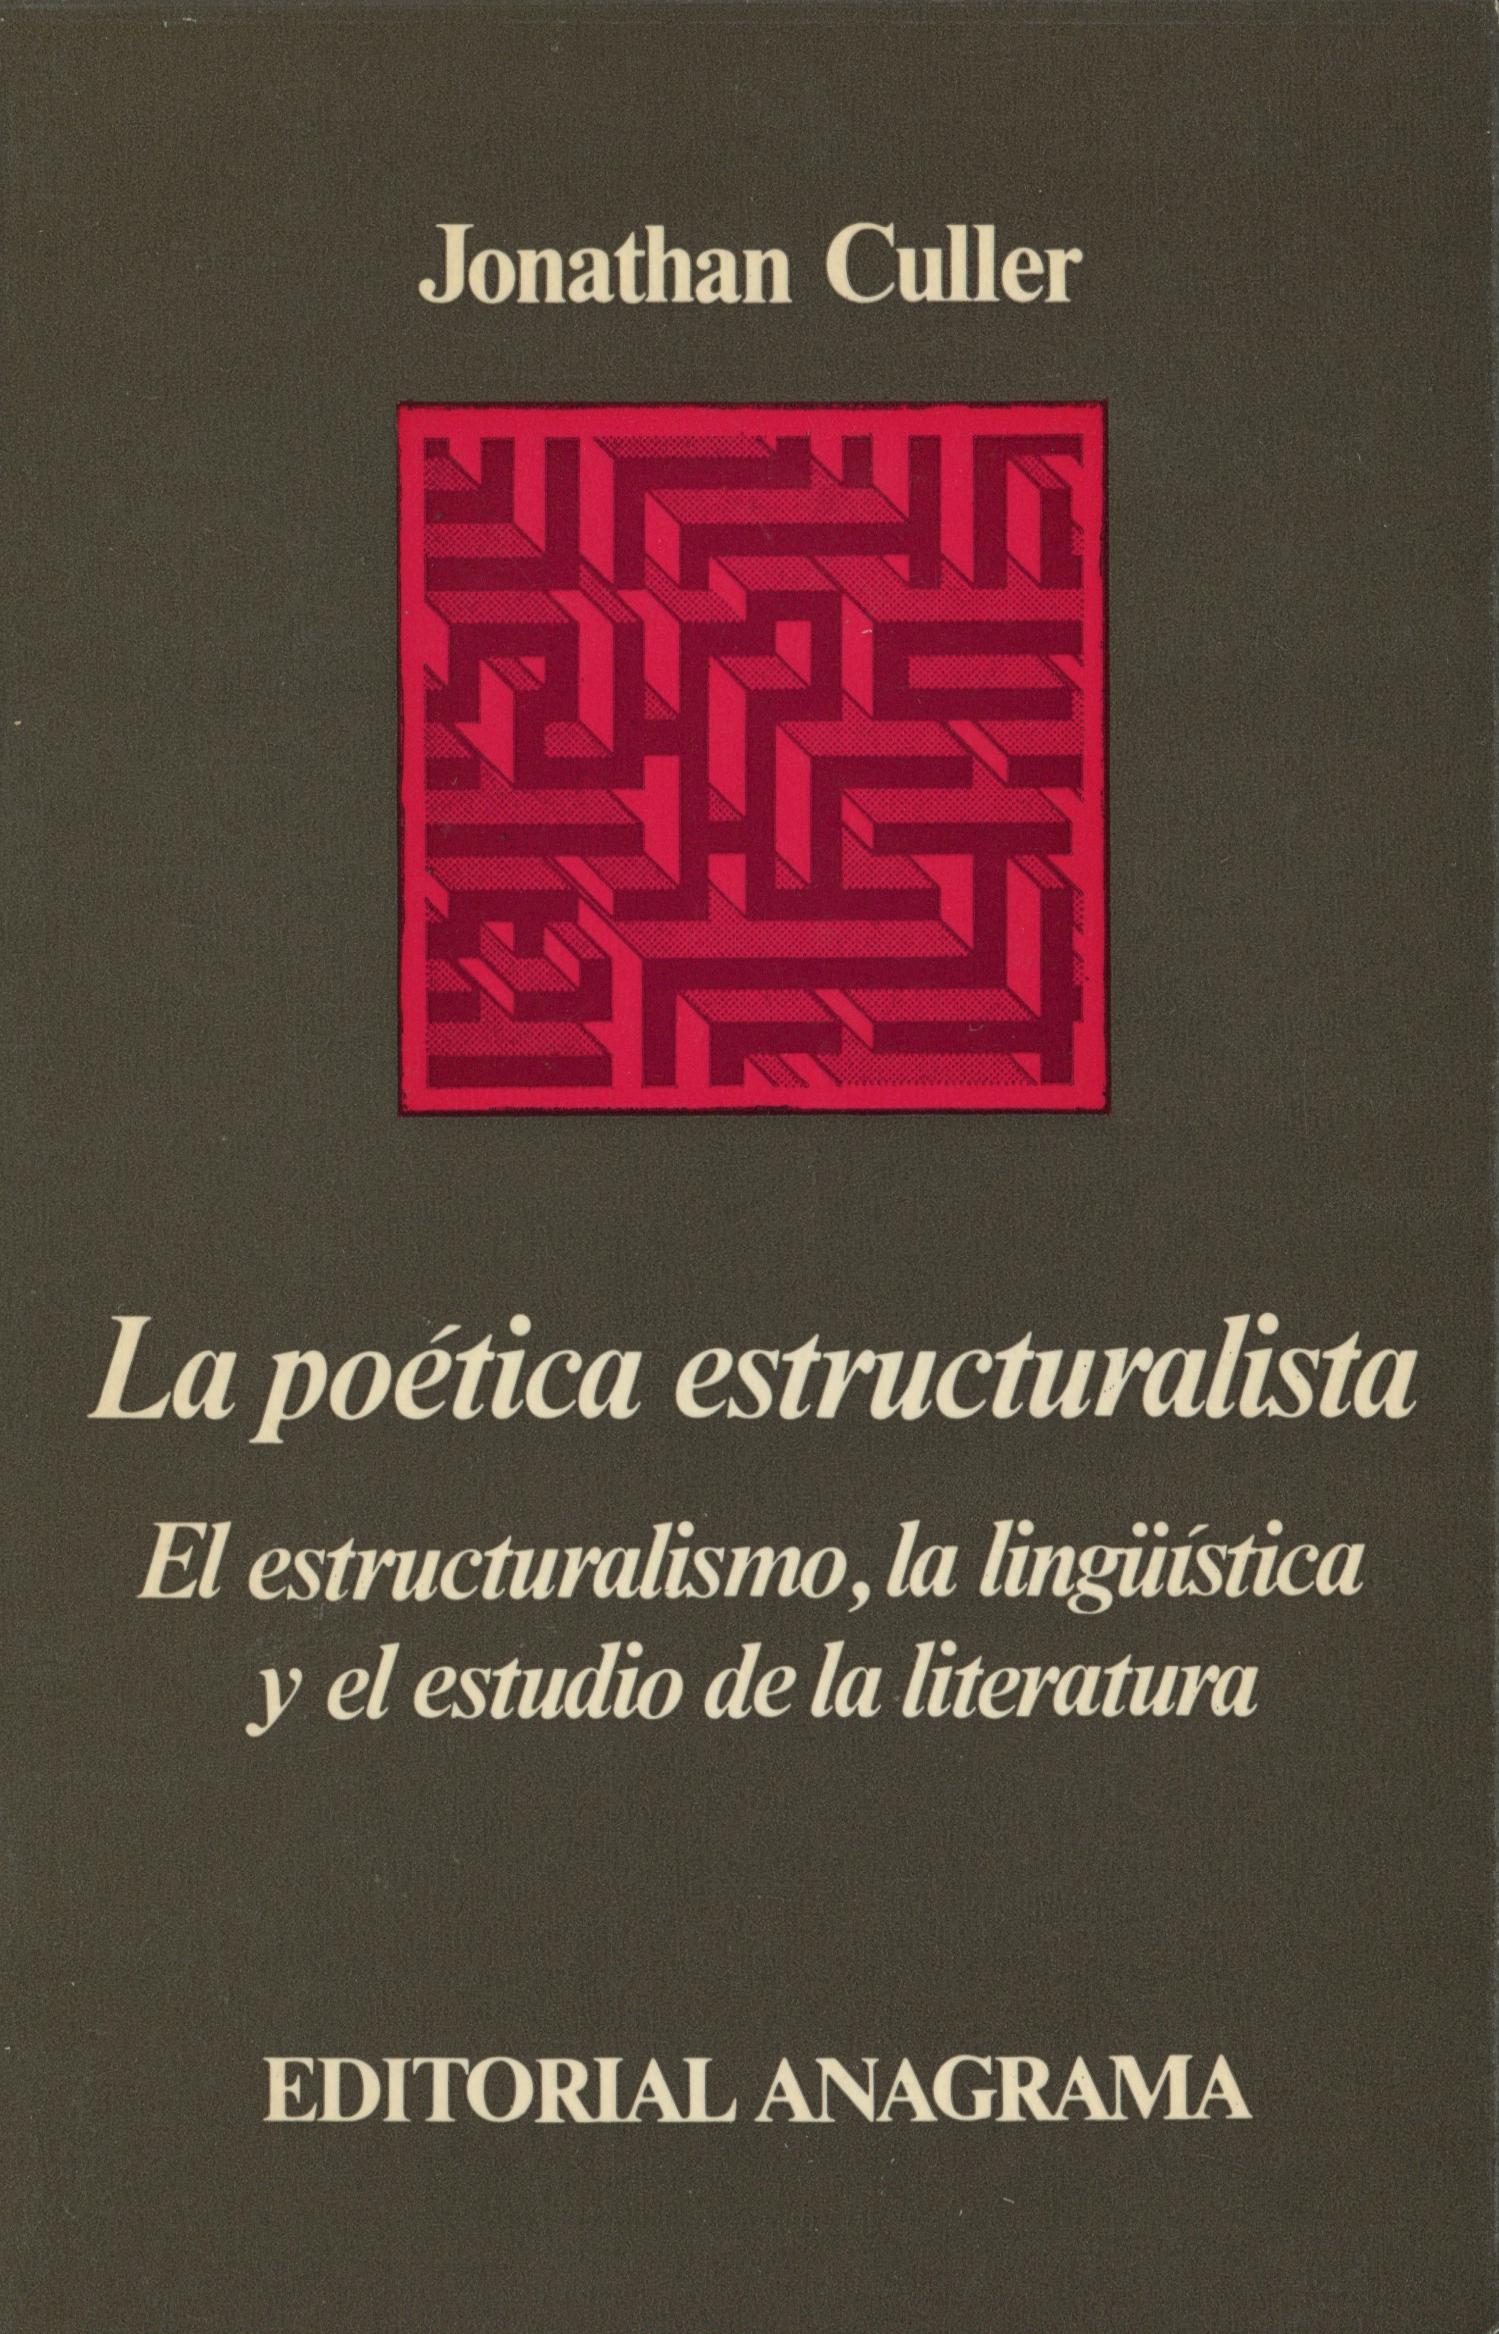 La poética estructuralista "El estructuralismo, la lingüística y el estudio de la literatura"